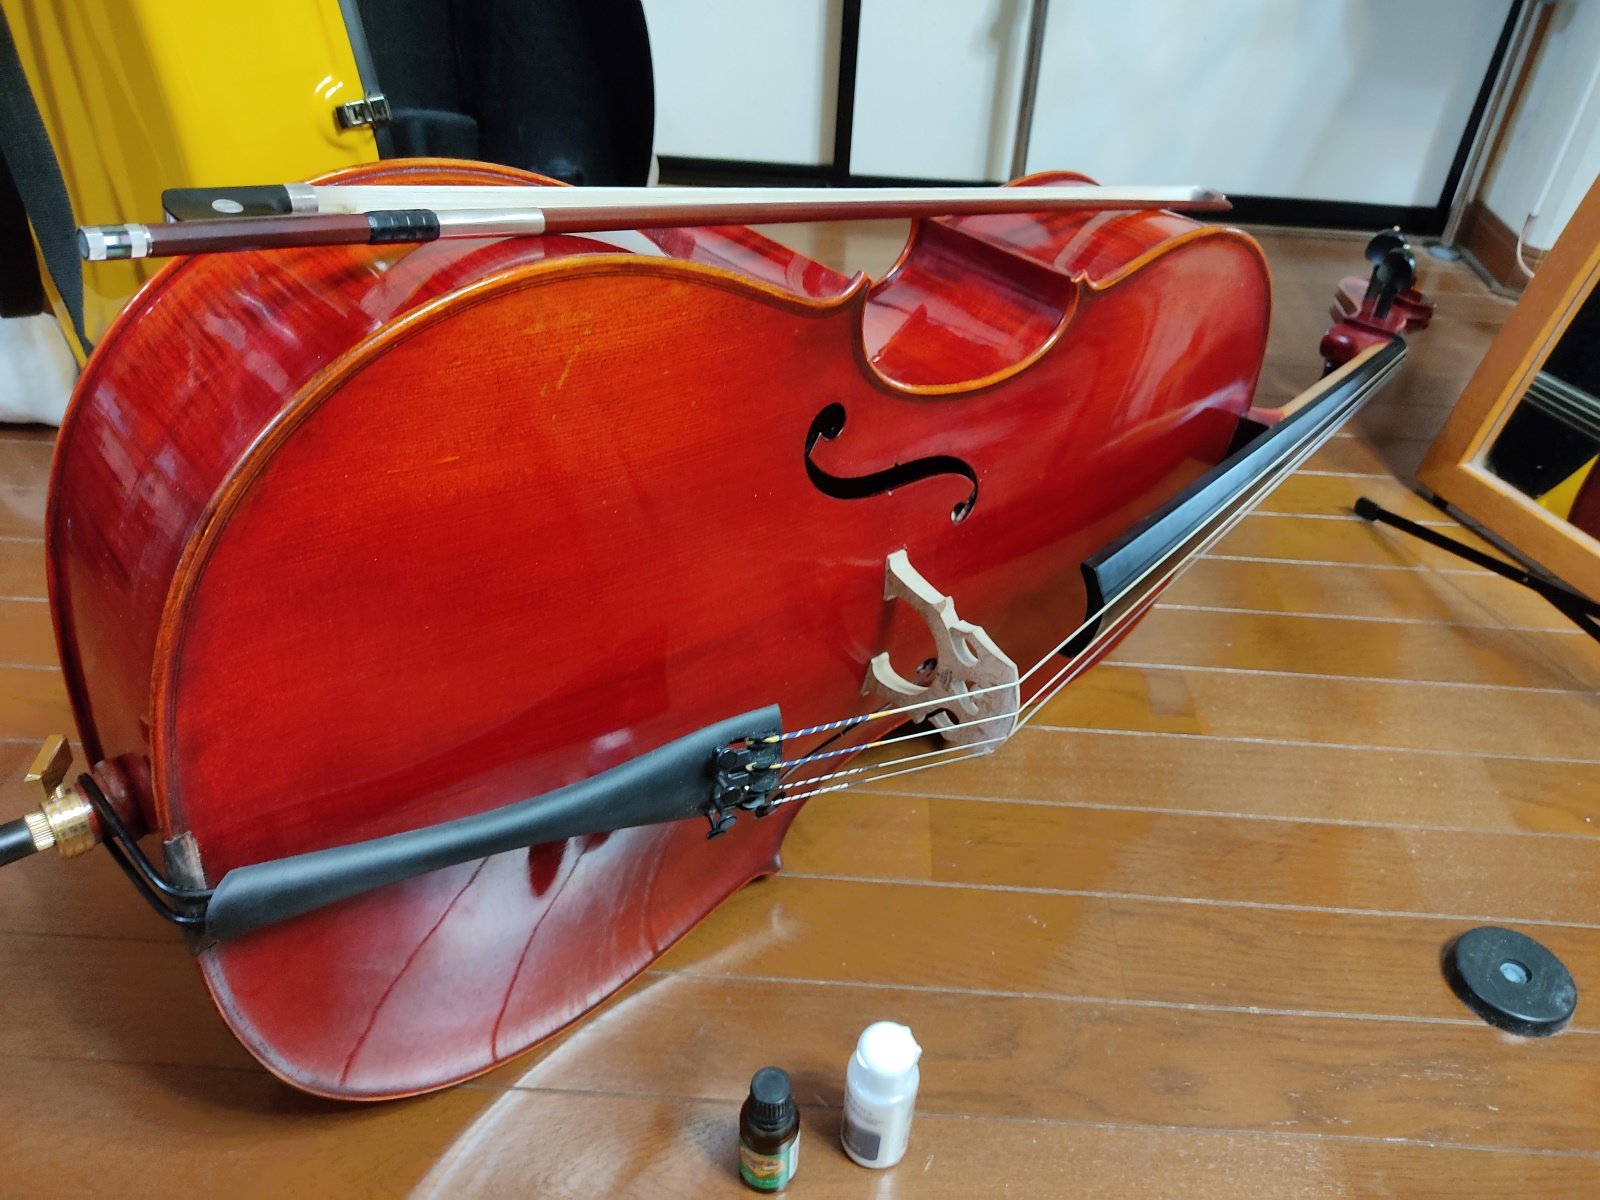 https://kumachabin.net/archives/2023/01/cello.jpg